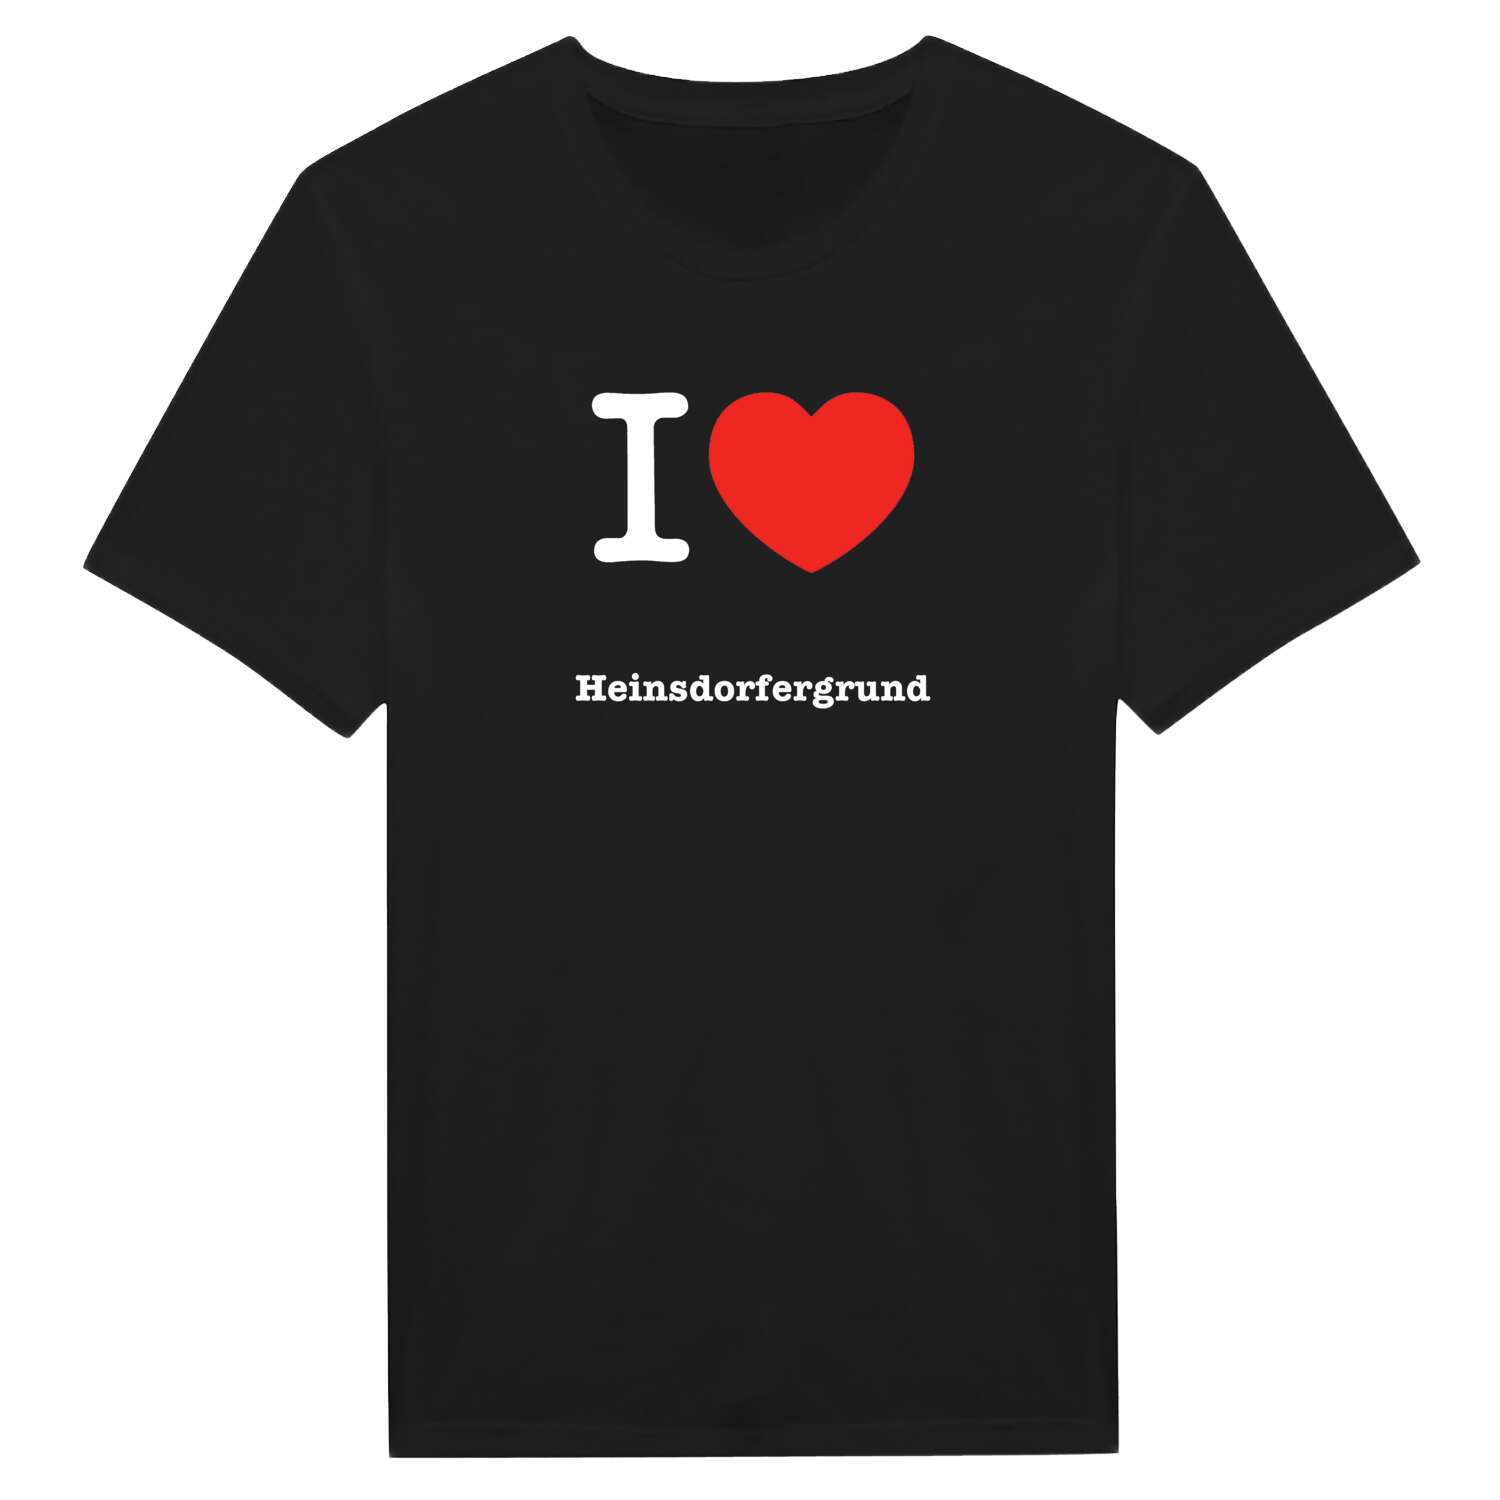 Heinsdorfergrund T-Shirt »I love«